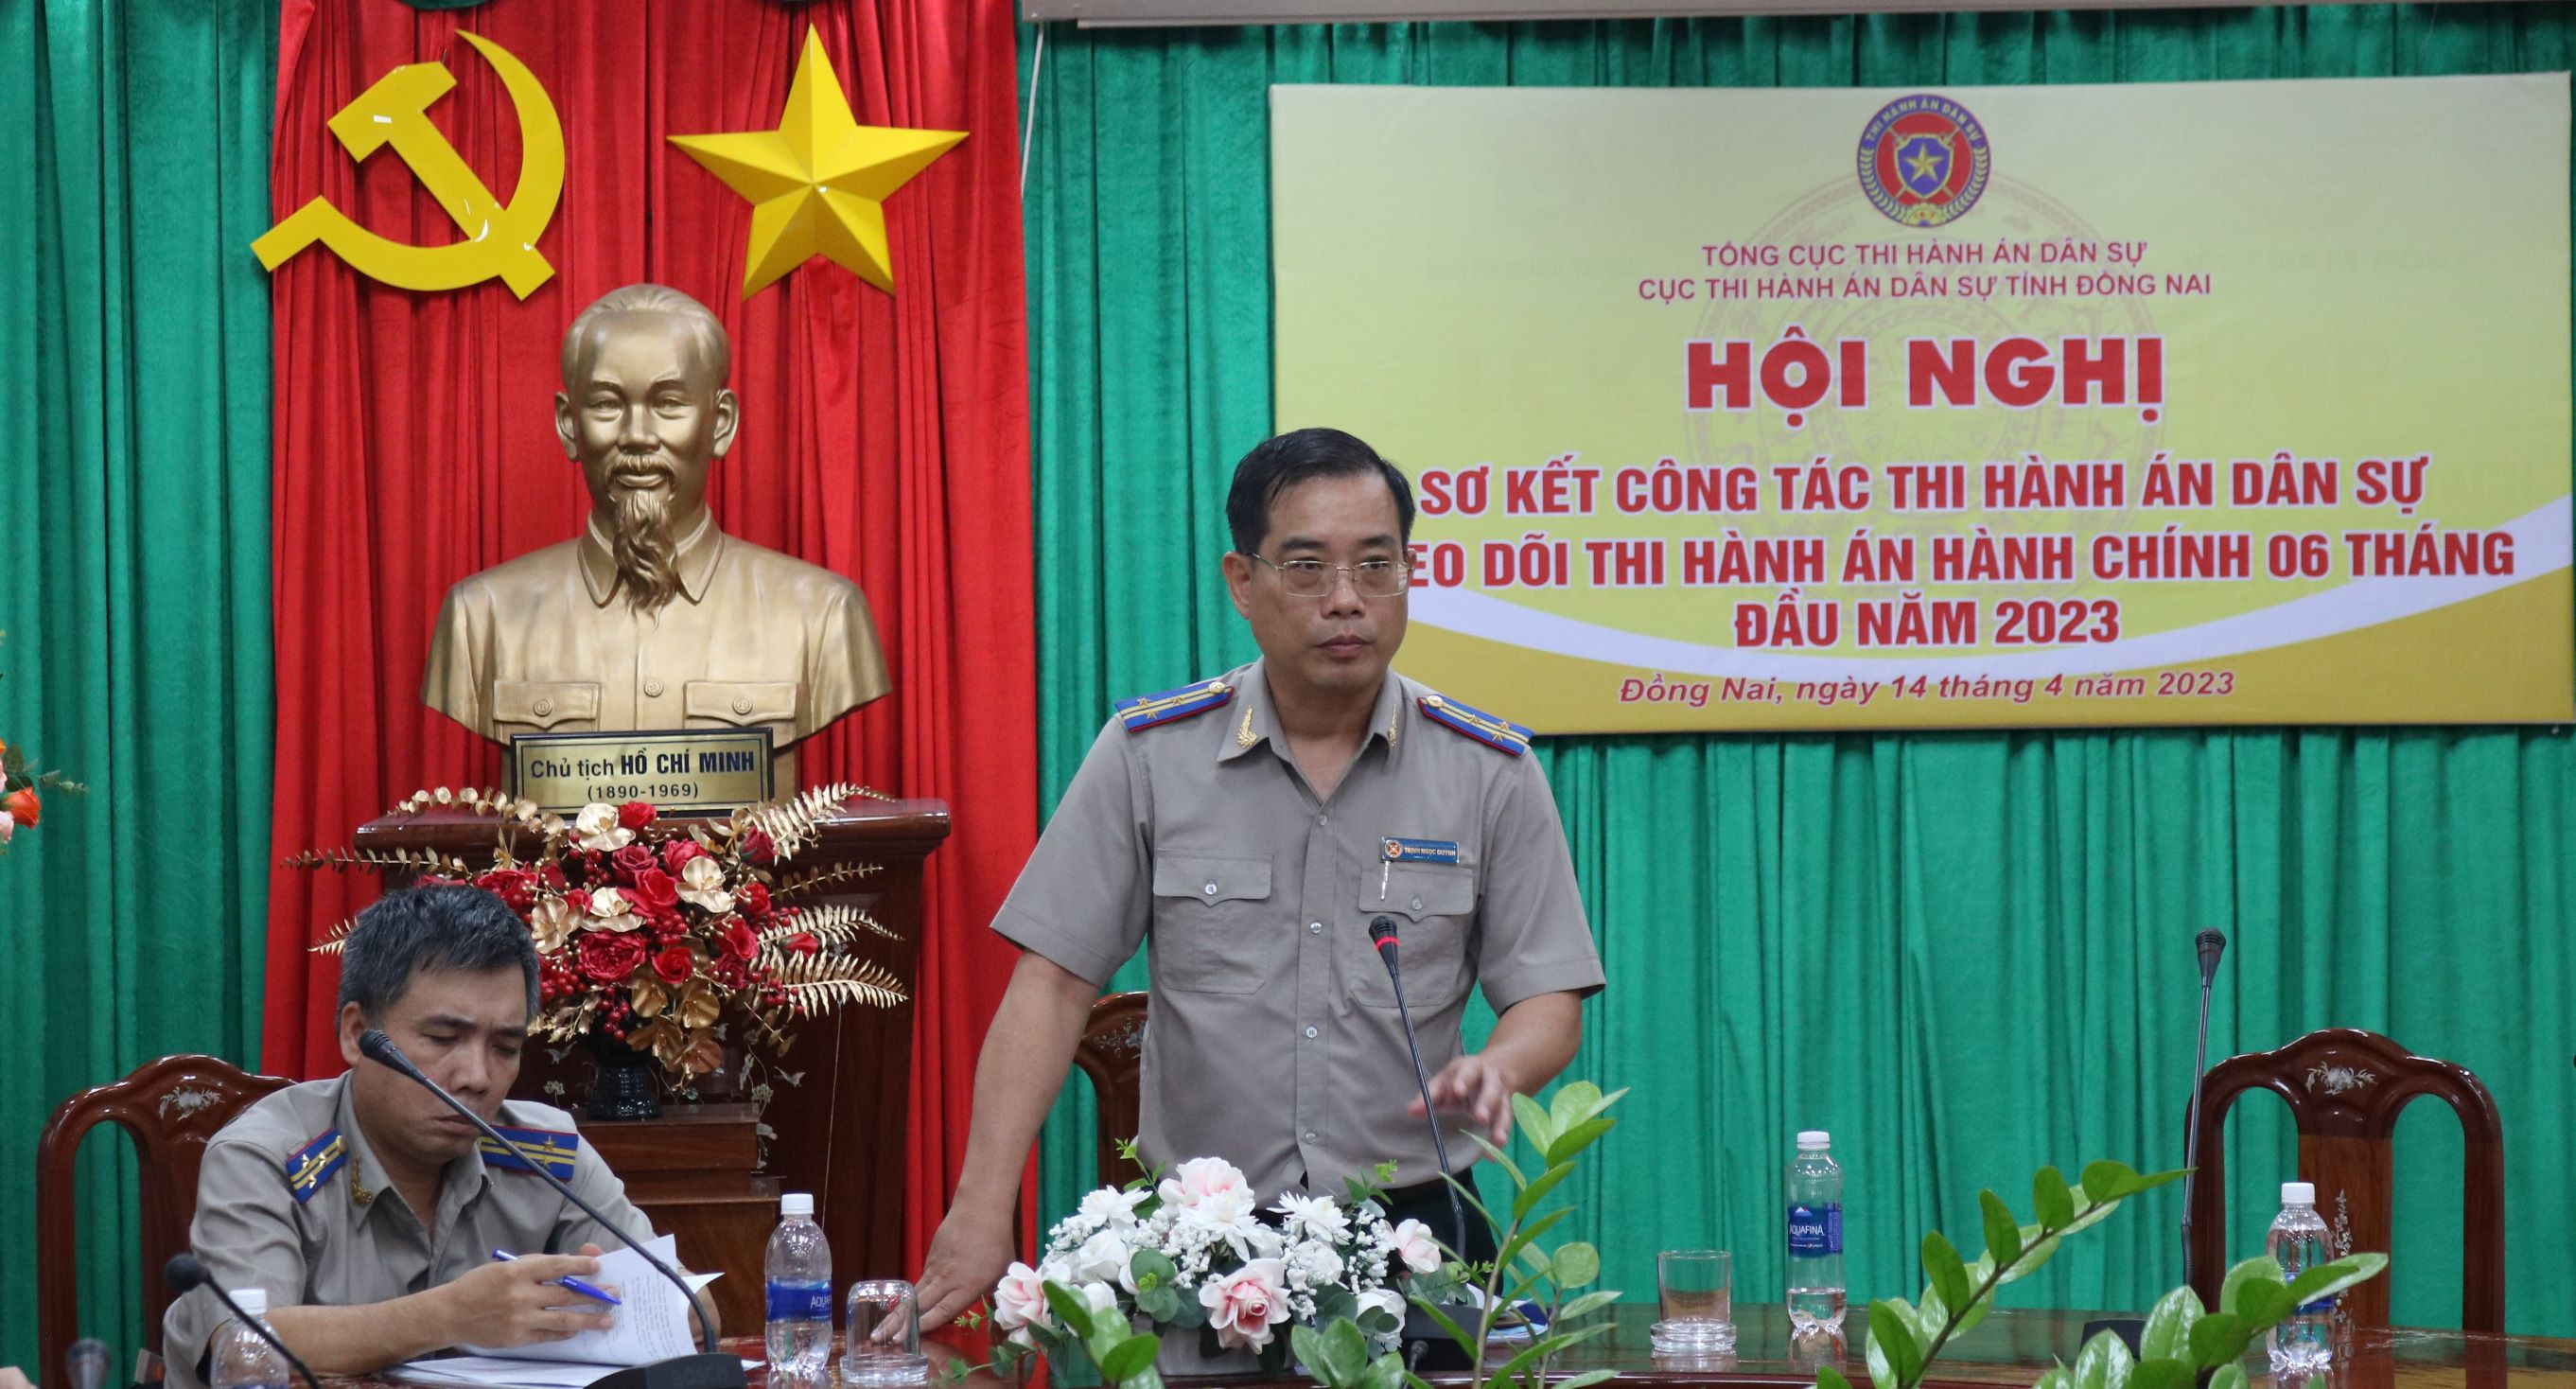 Ông Trịnh Ngọc Quỳnh – Cục trưởng Cục THADS tỉnh Đồng Nai phát biểu chỉ đạo.